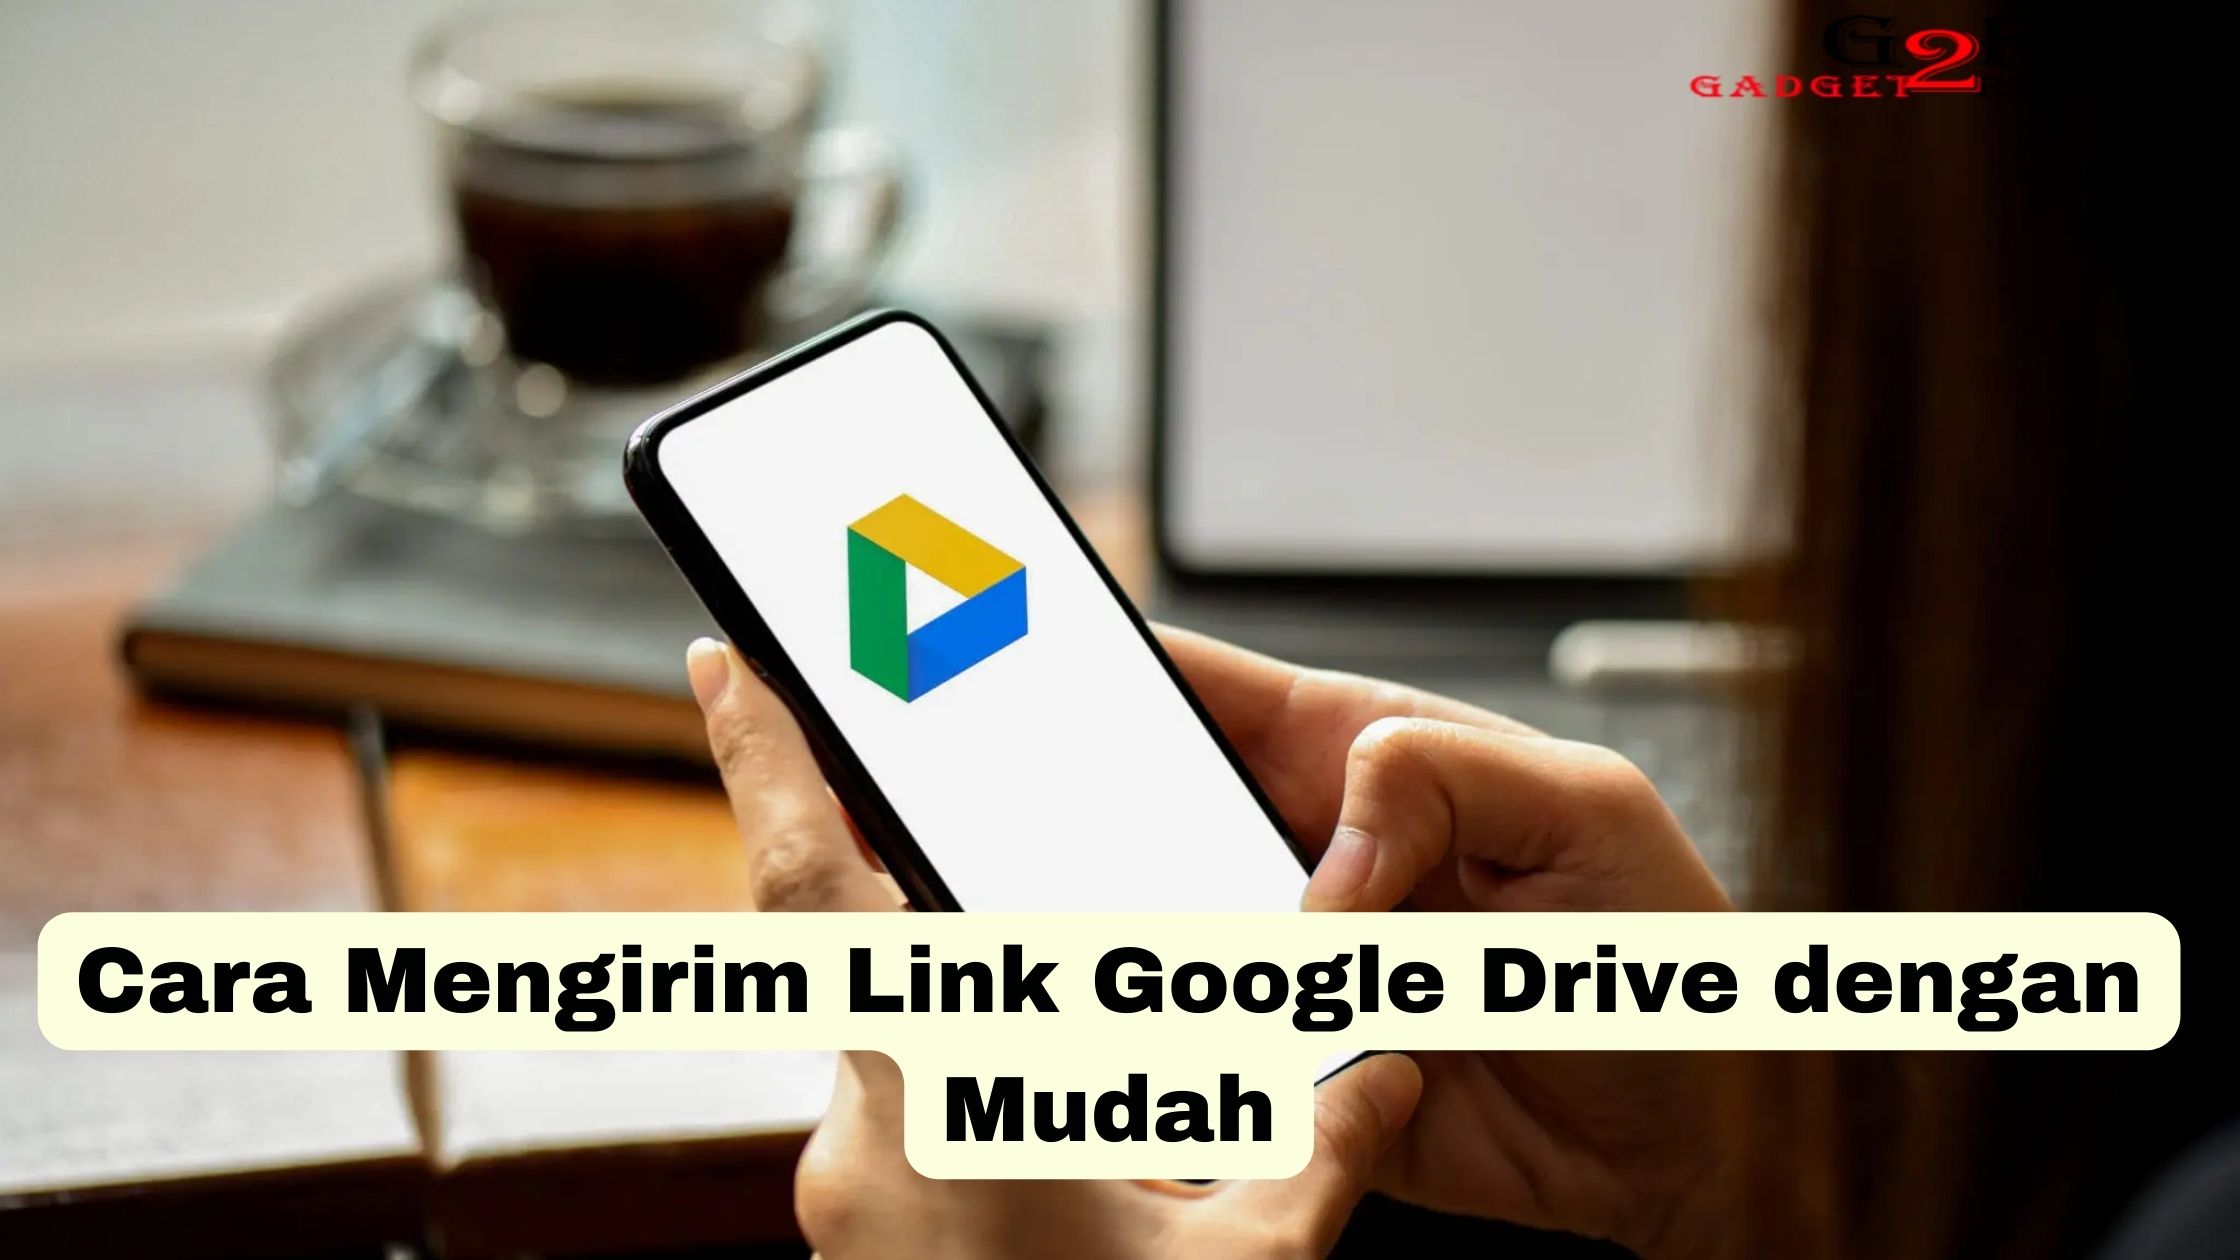 Cara Mengirim Link Google Drive